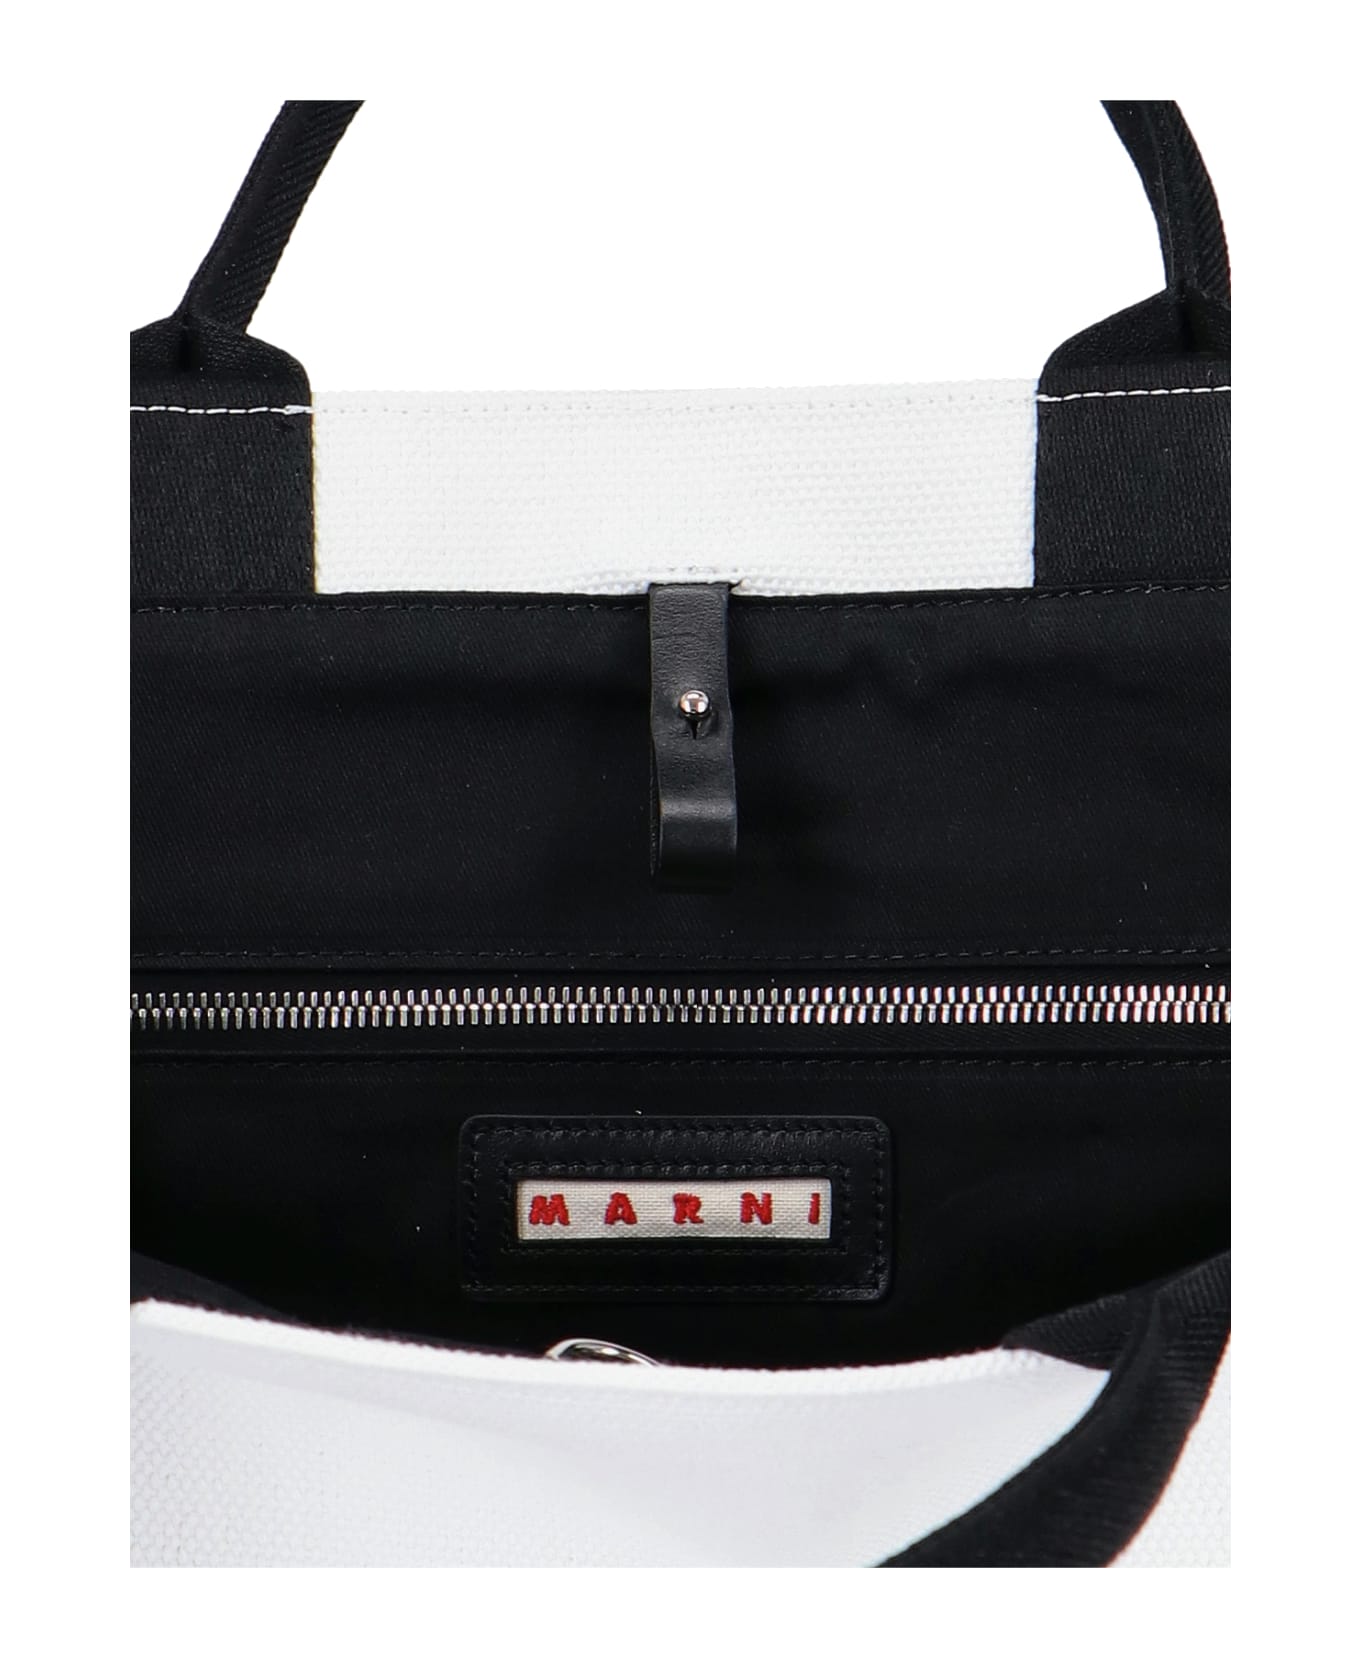 Marni Logo Tote Bag - White トートバッグ